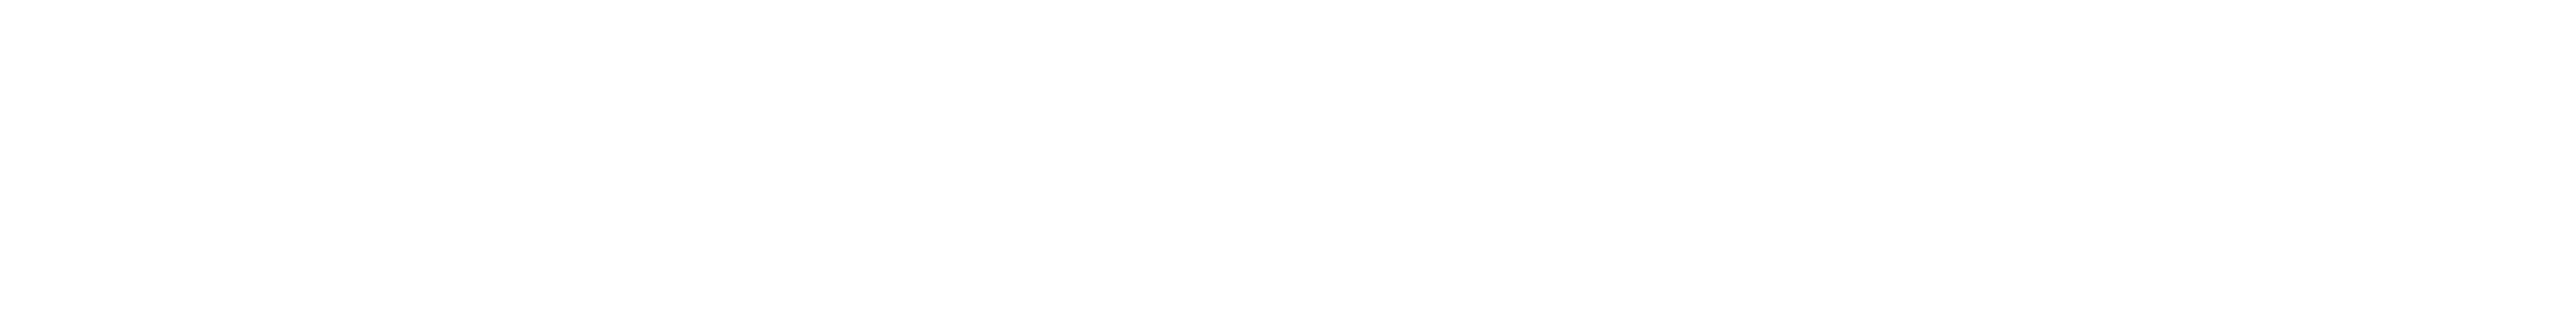 Catatoga Logo